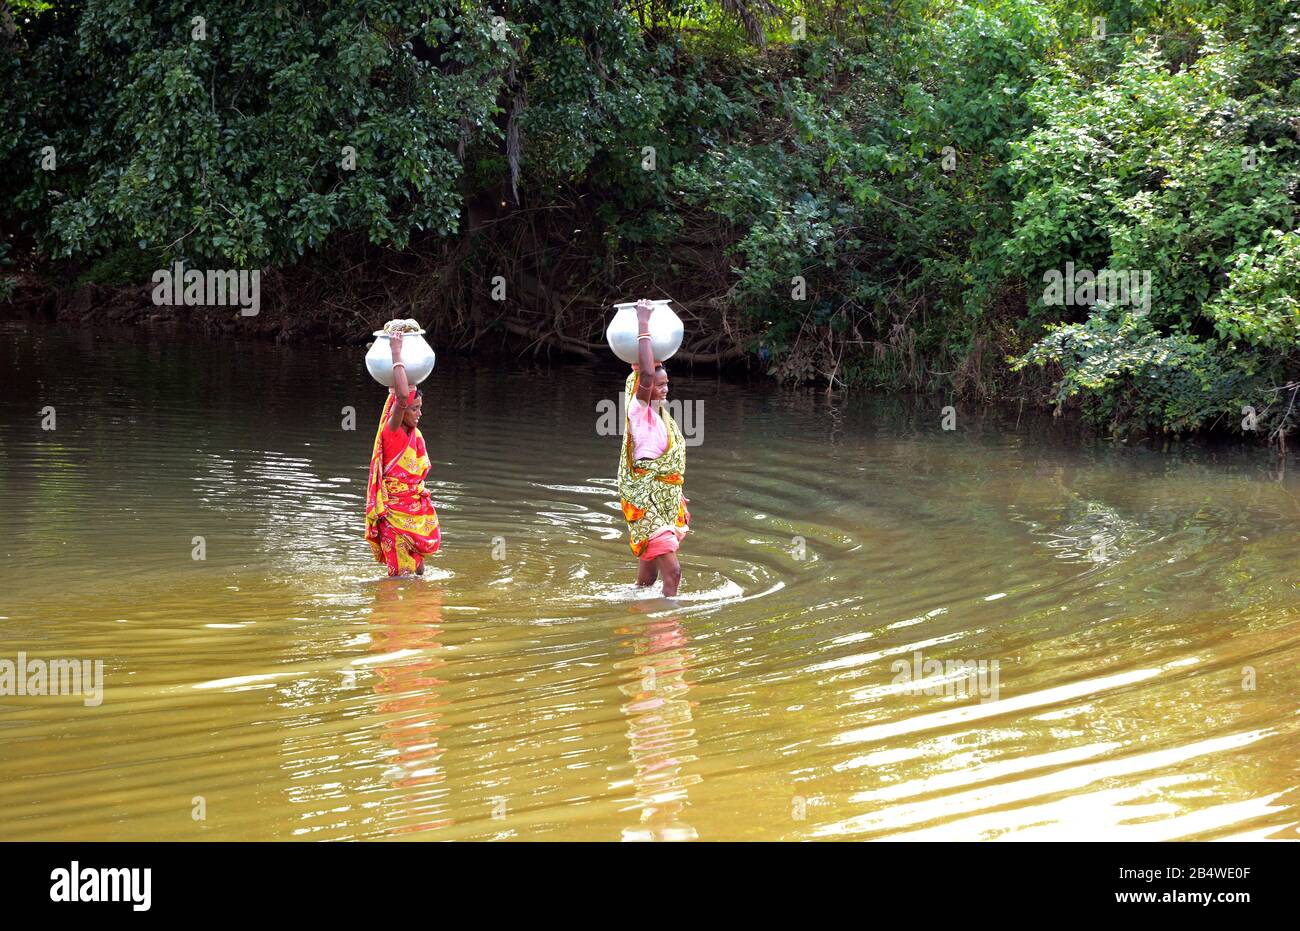 Acqua potabile - Lotta per l'acqua potabile nel remoto villaggio del Bengala Occidentale, India. Foto Stock